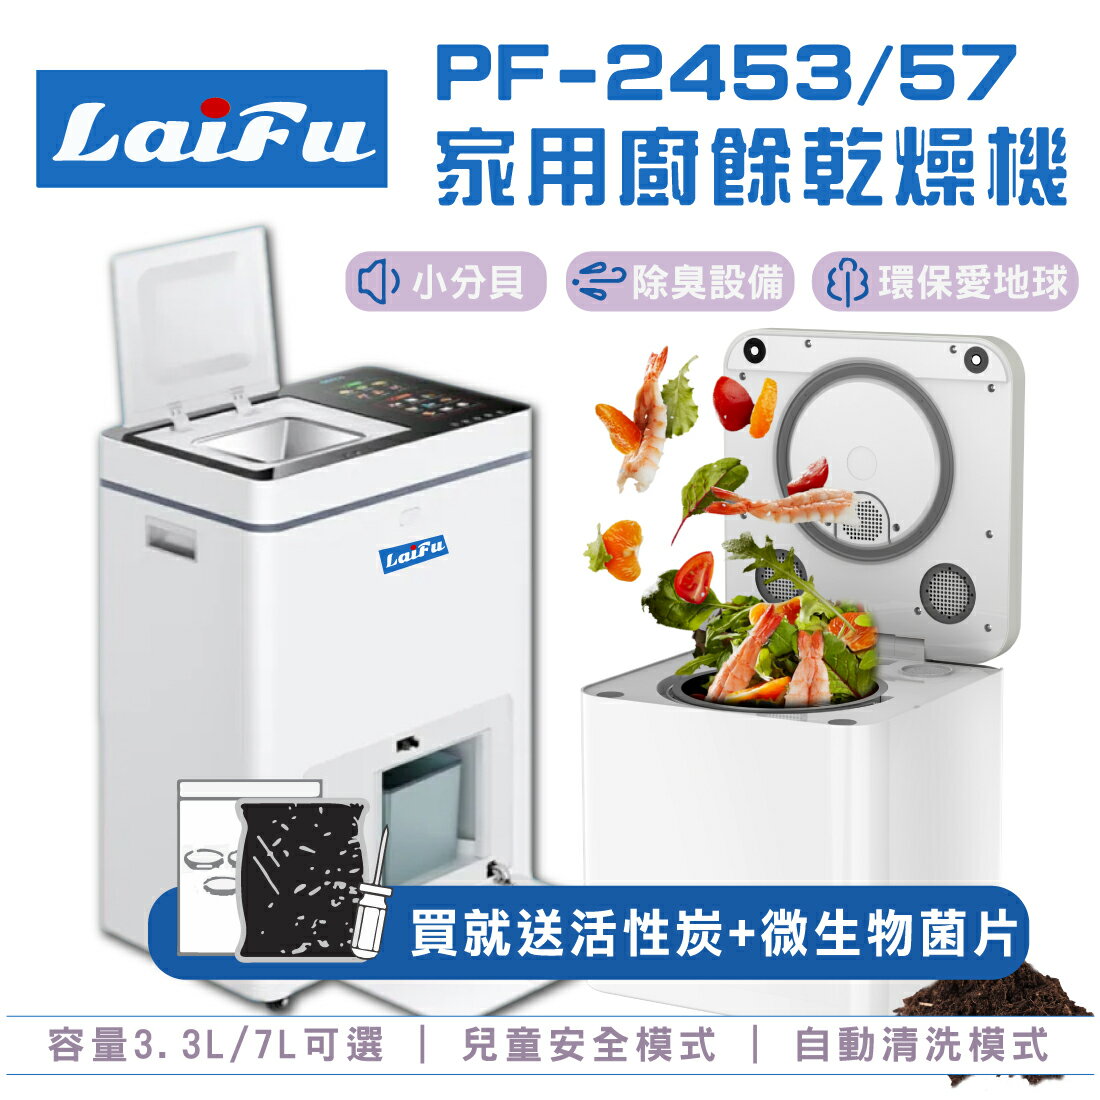 [情報] LAIFU 3.3L家用廚餘機 $9,990